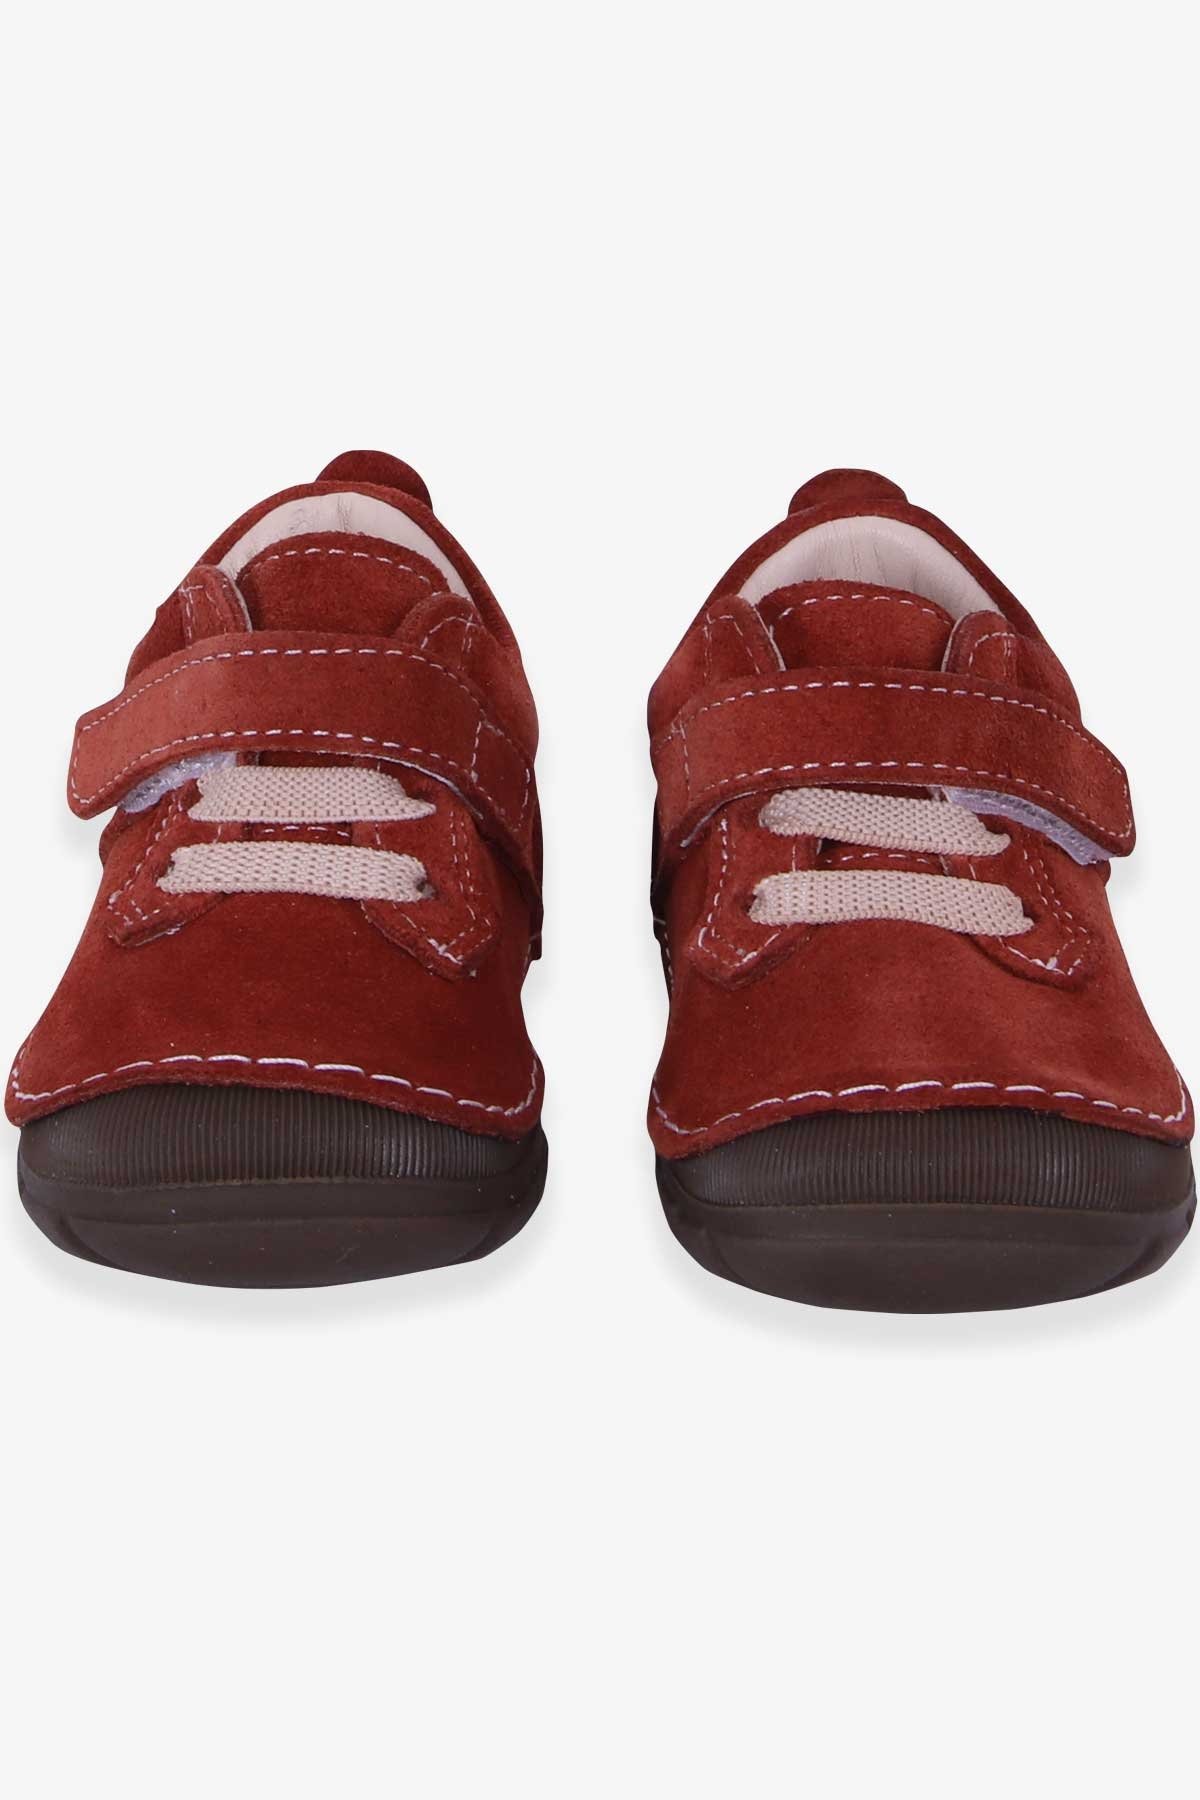 Erkek Çocuk Cırtlı Süet Ayakkabı Tarçın 19-22 Numara - Tatlı Bebek  Ayakkabıları | Breeze